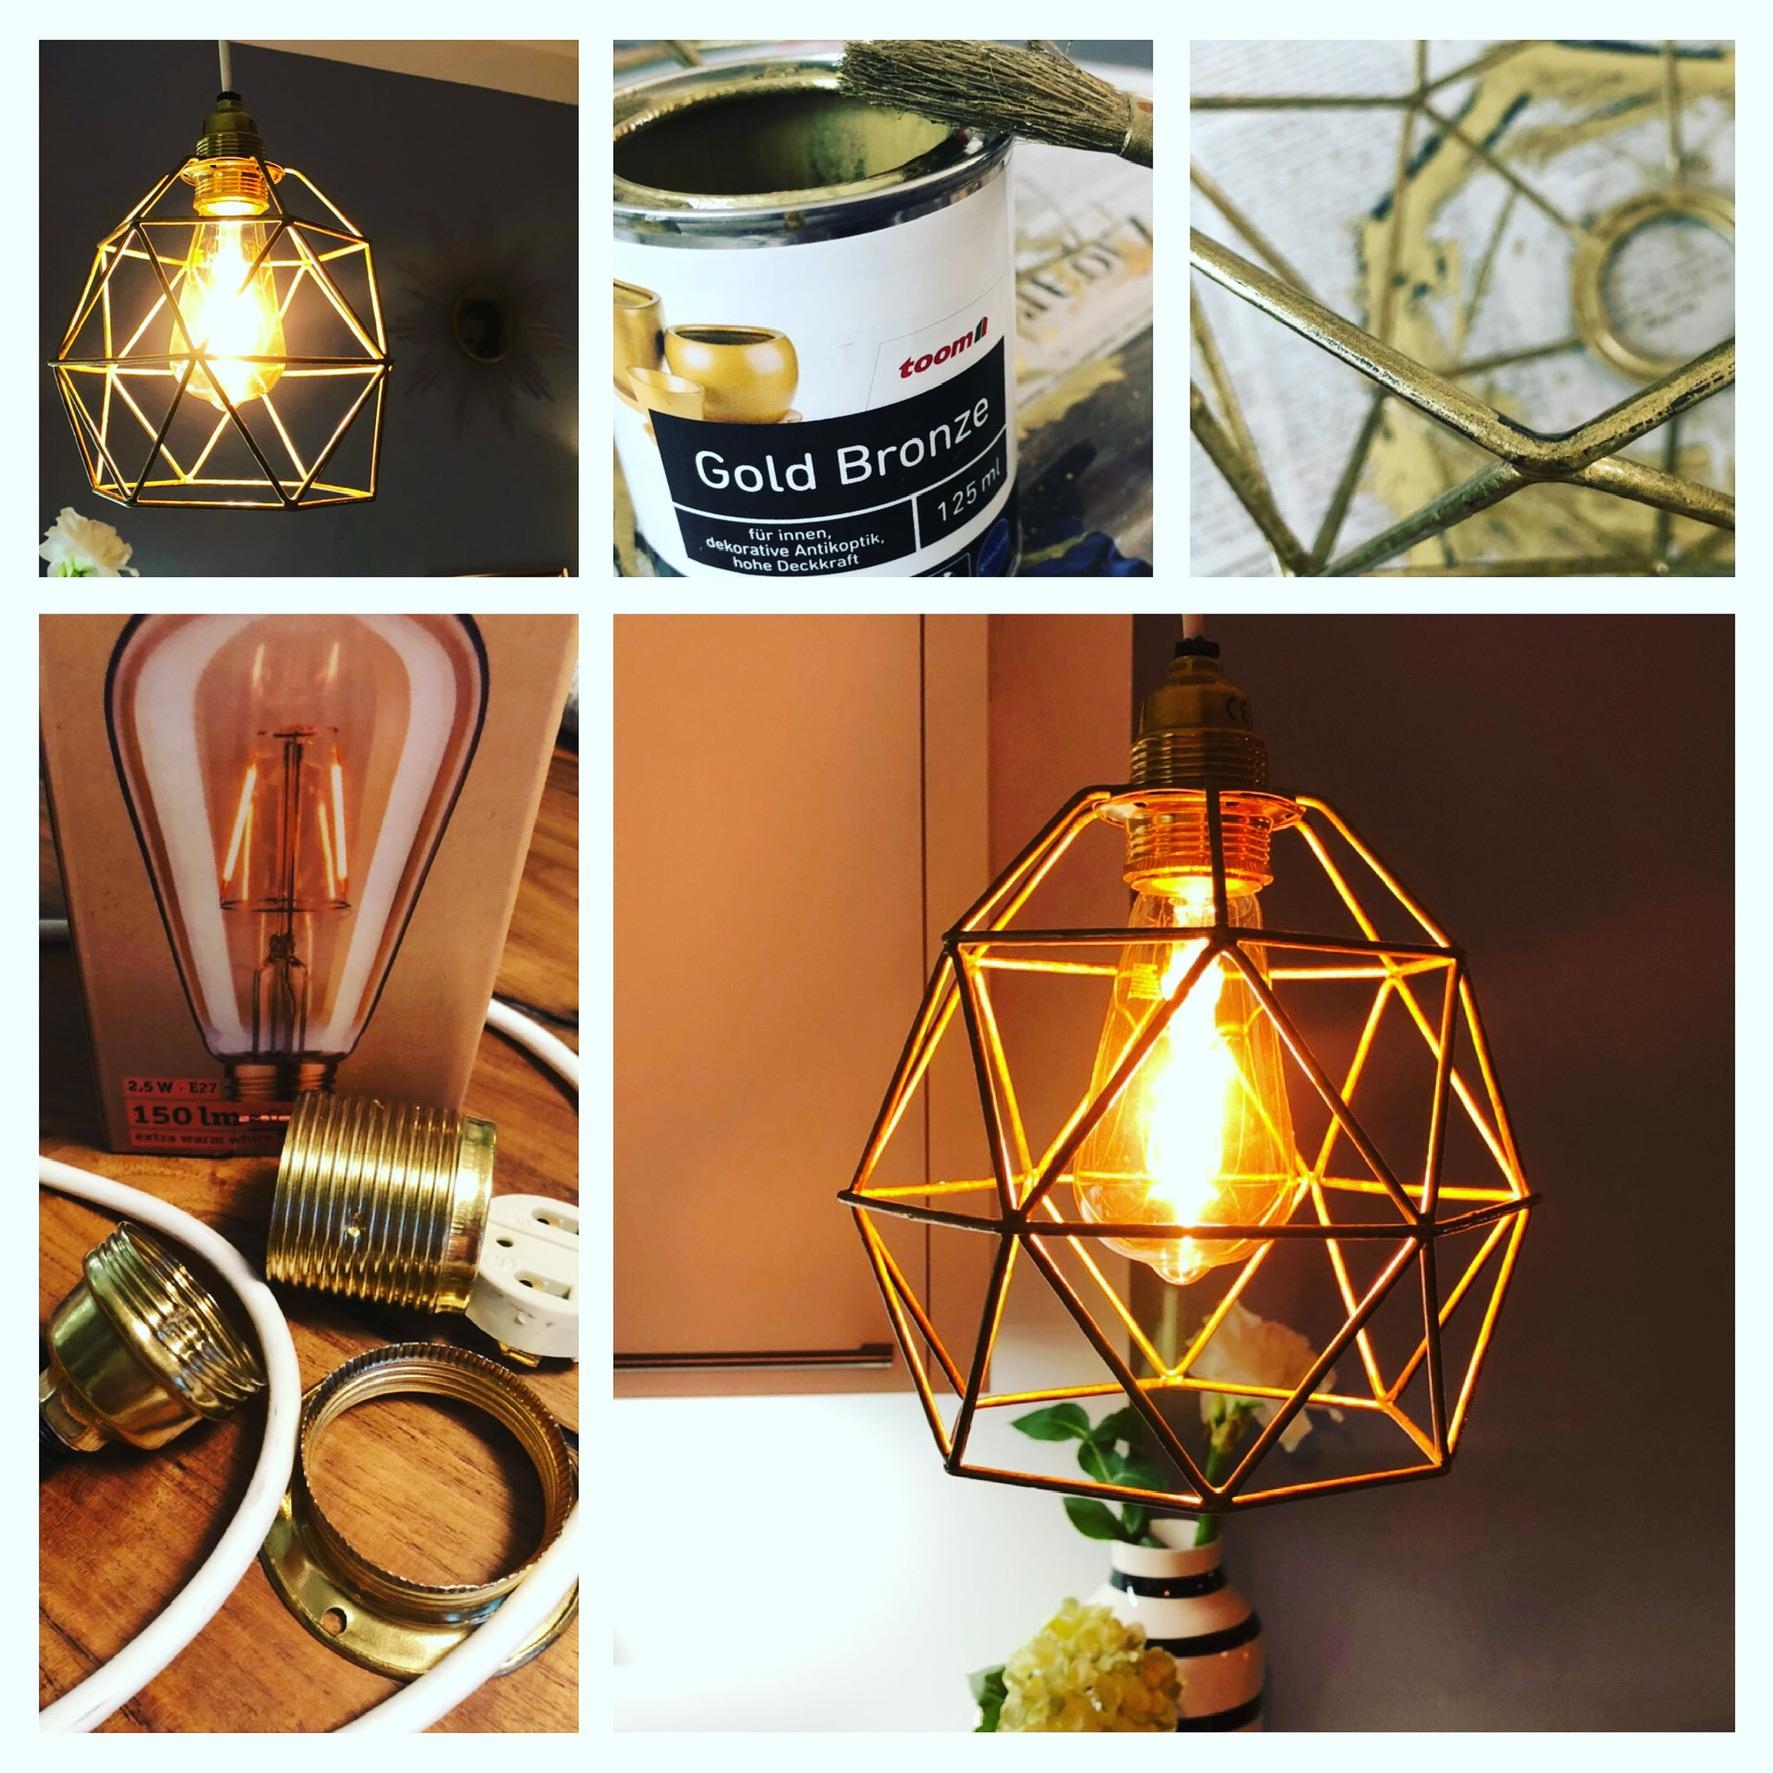 Schöne neue Lampe: aus altem Drahtschirm, Kabel und neuer Birne 💡
#diy #lampe #gold